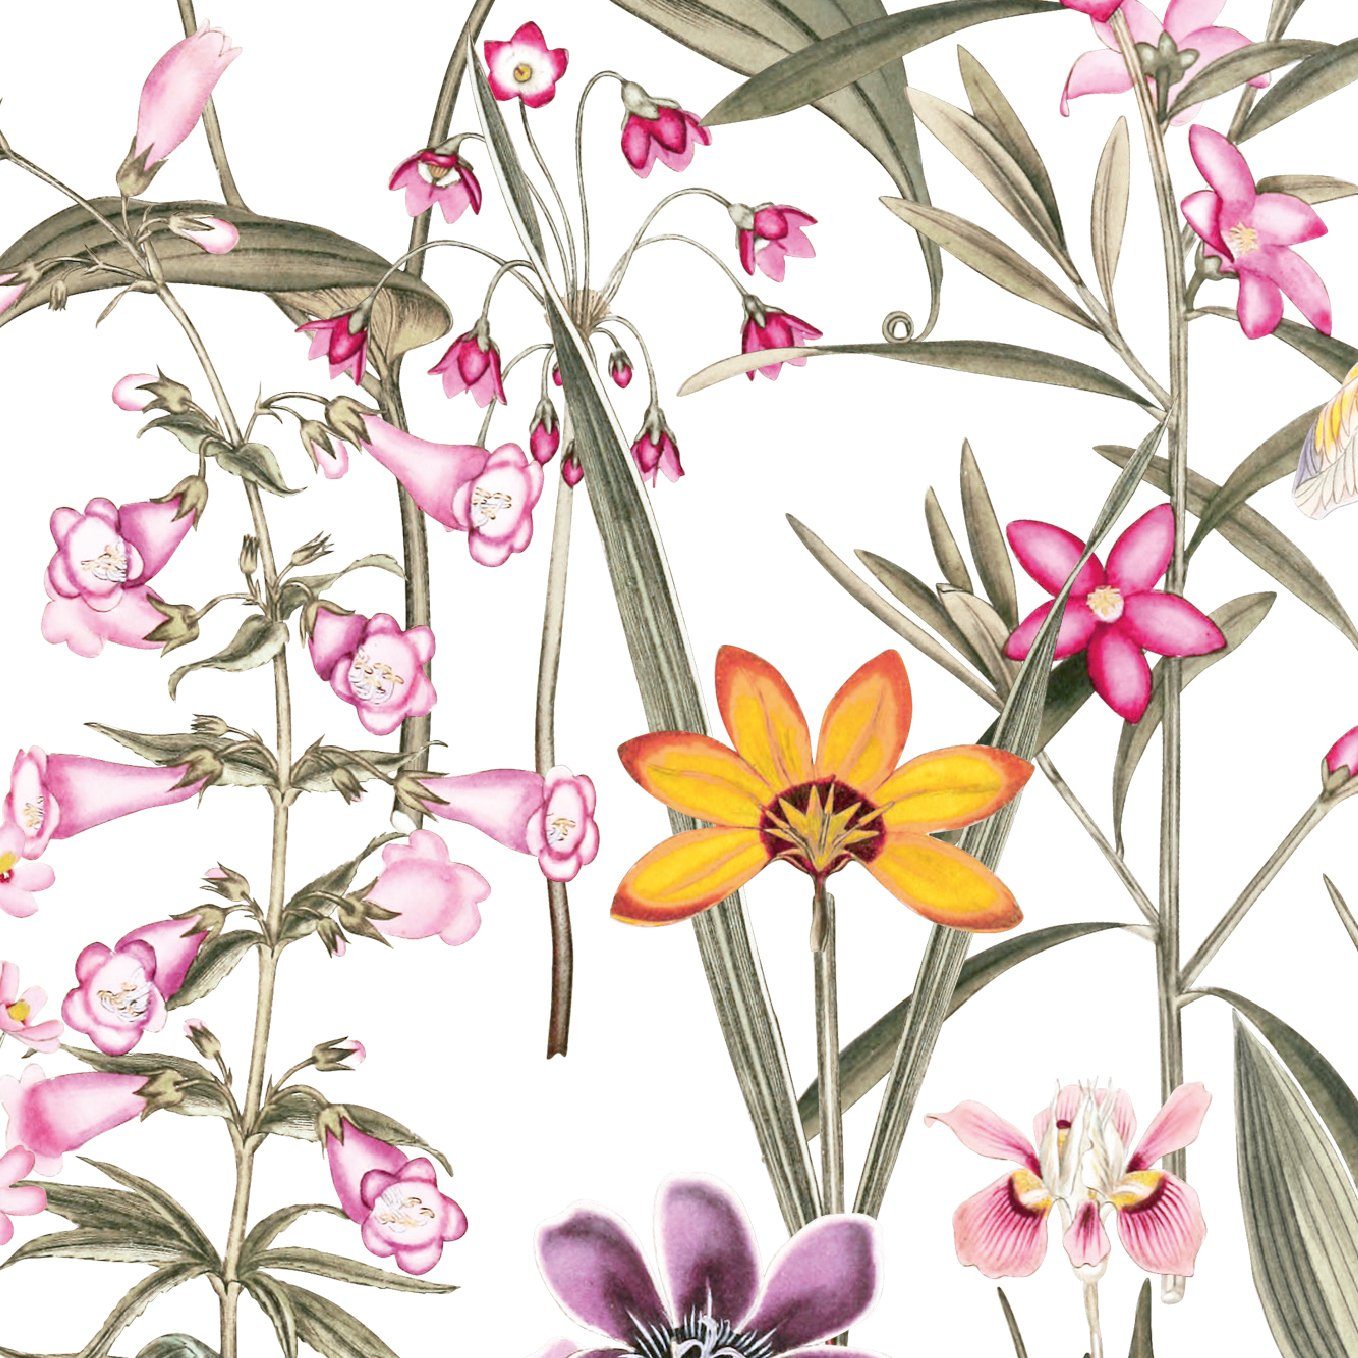 anna wand Bordüre Botanical Garden / Blumen - mehrfarbig auf weiß - selbstklebend, floral, selbstklebend | Selbstklebende Tapeten